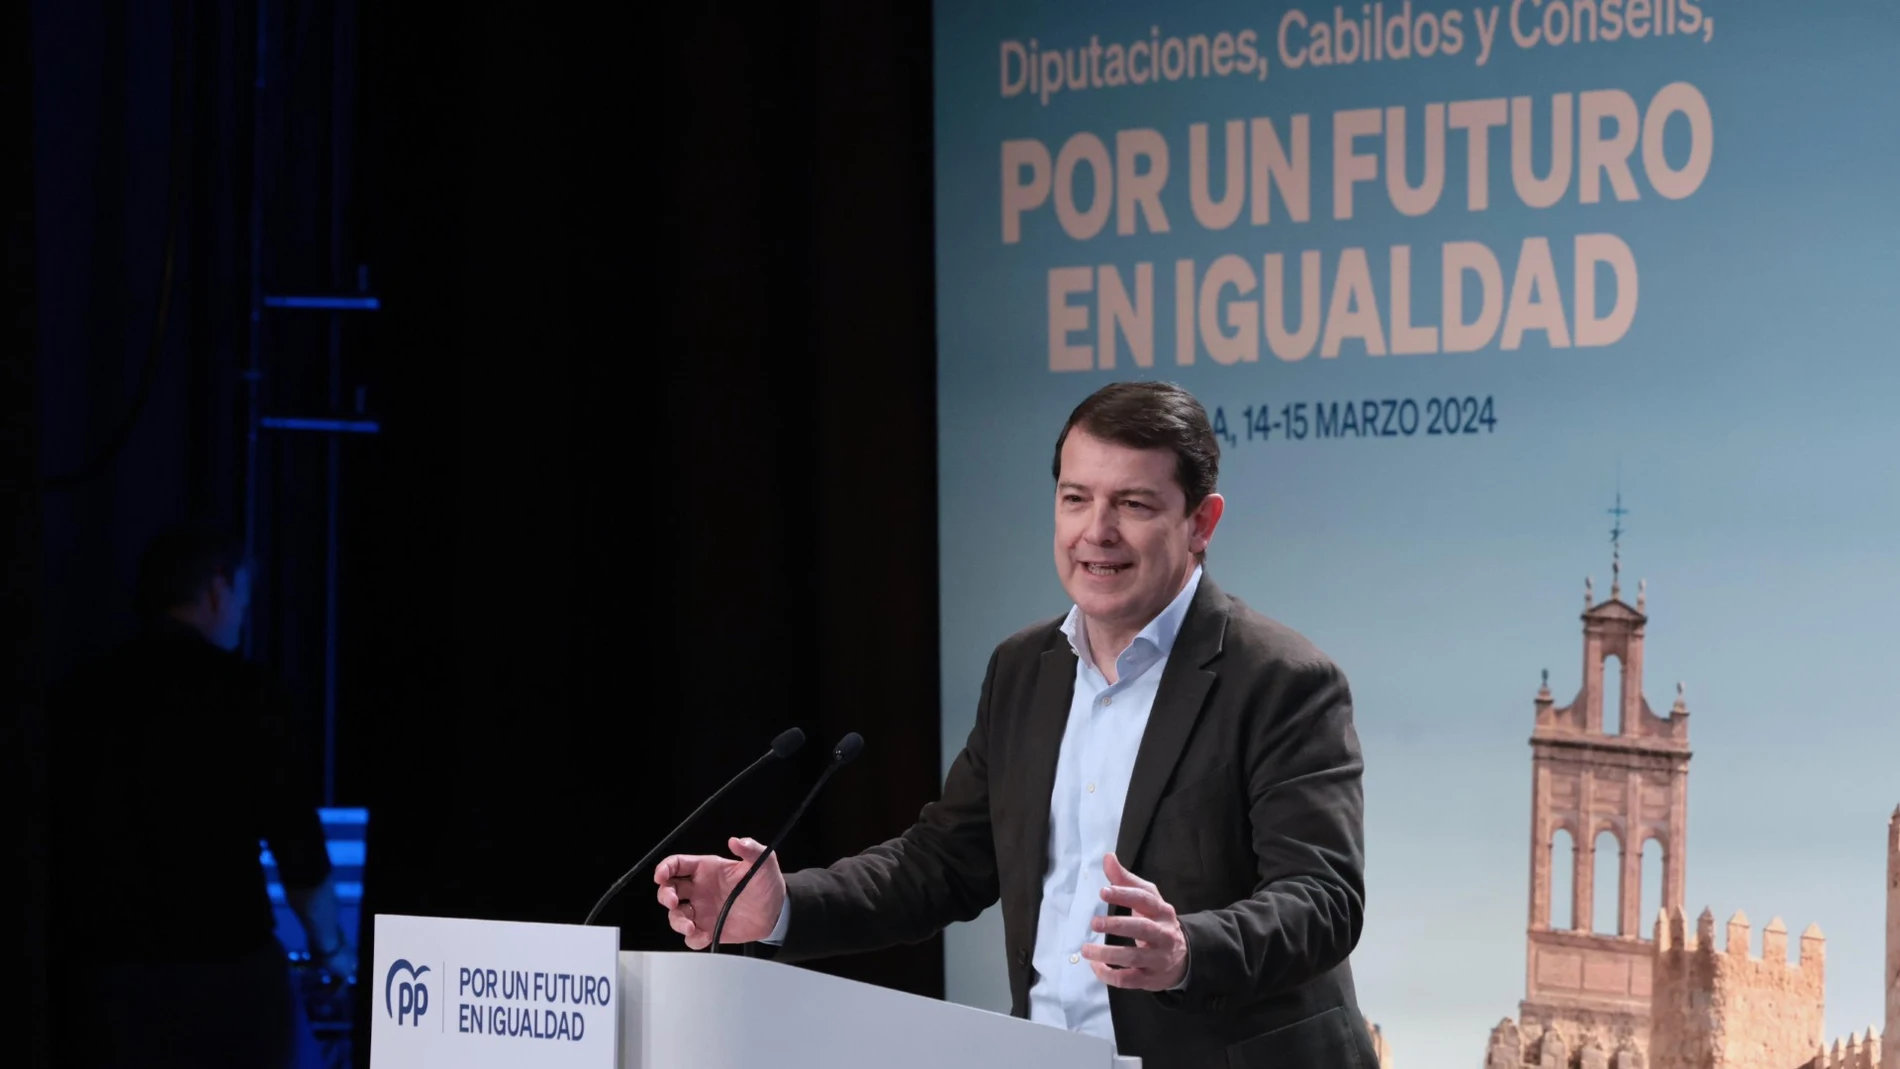 El presidente Alfonso Fernández Mañueco interviene en la jornada celebrada en Ávila